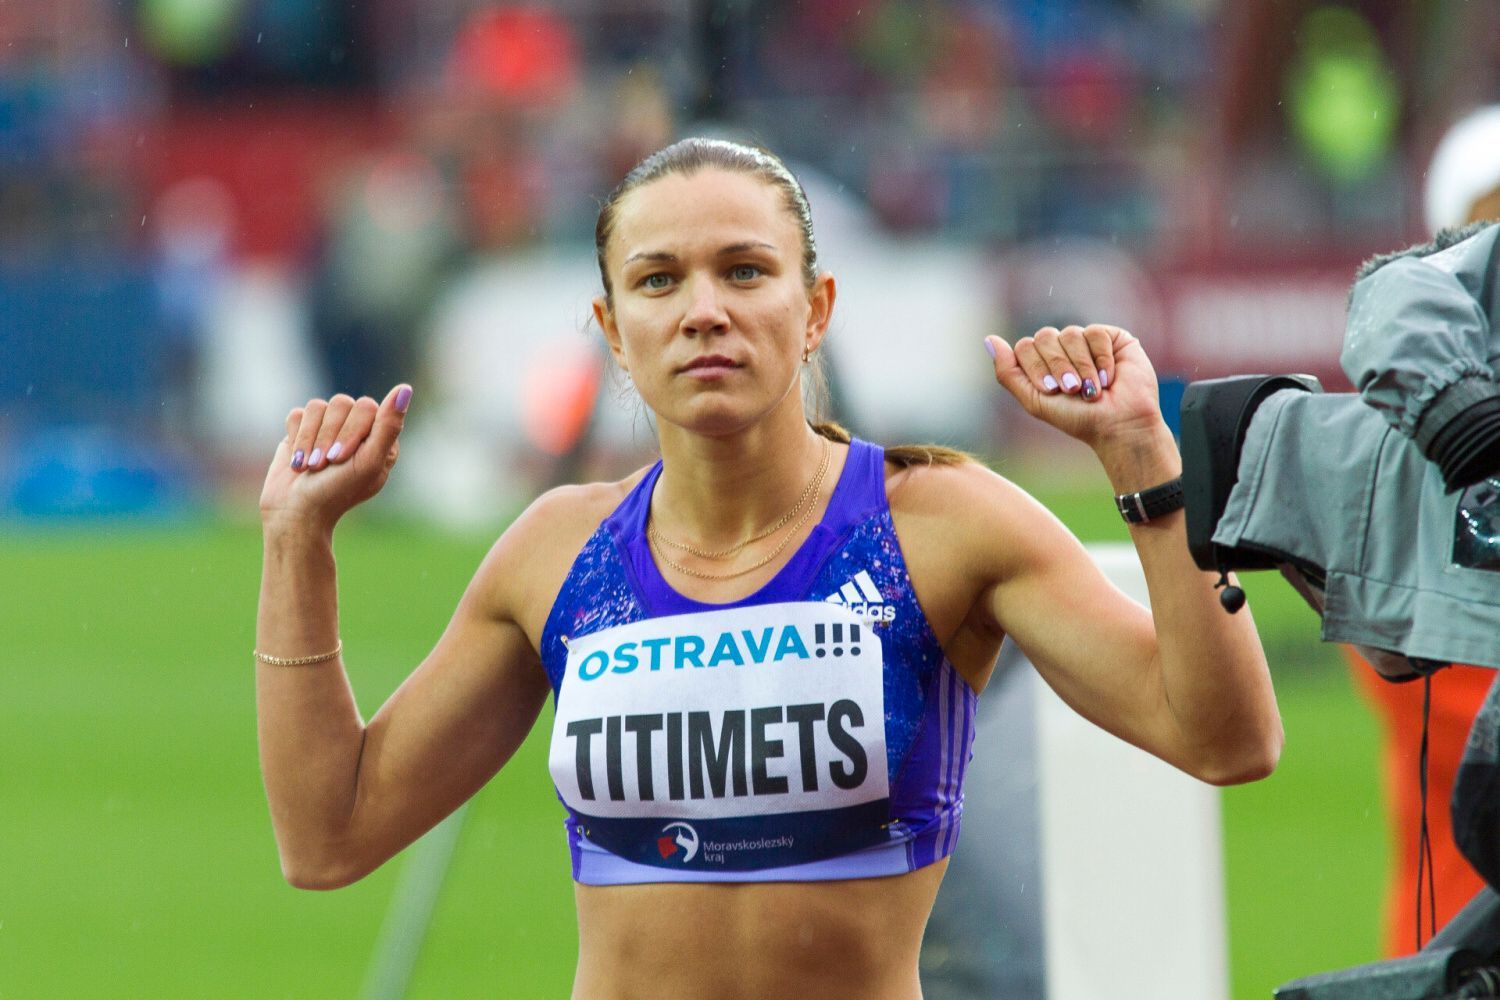 Zlatá tretra 2015: Hanna Titimetsová (400 m př.)